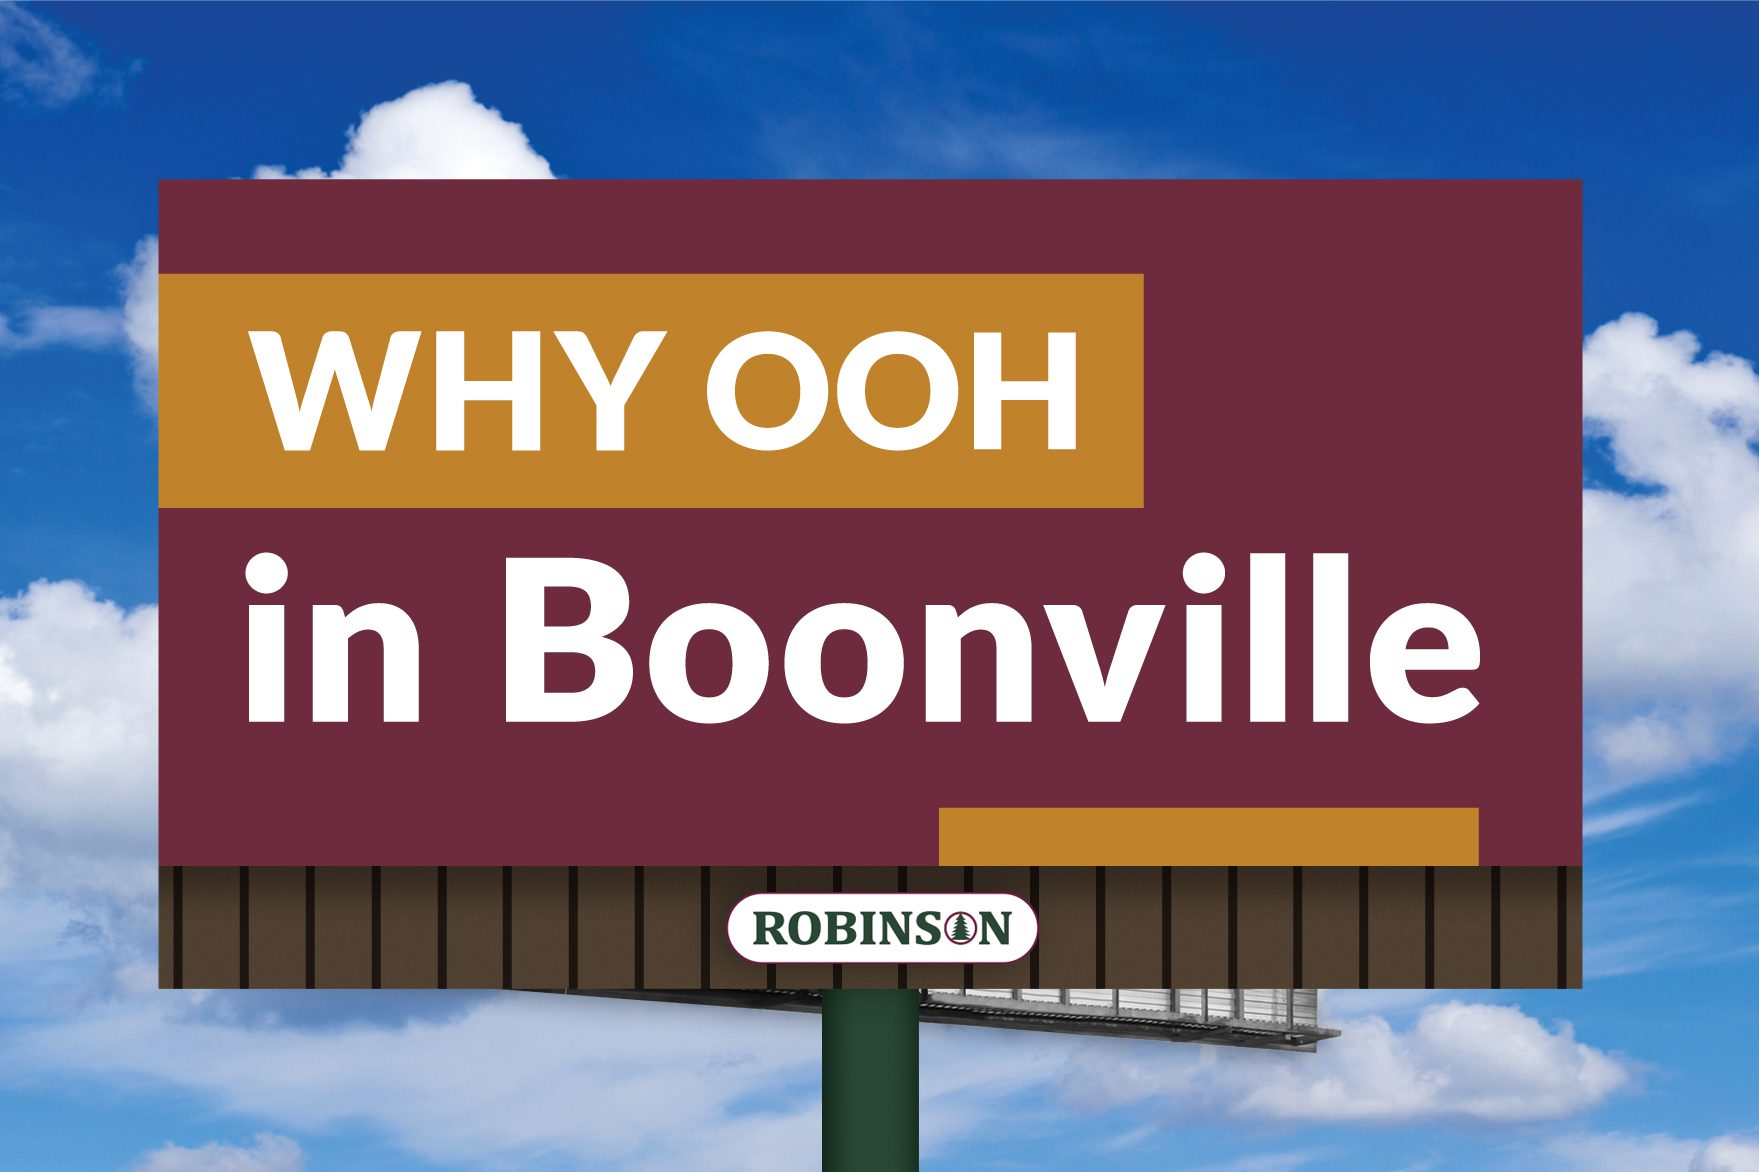 Boonville, Missouri digital billboard advertising